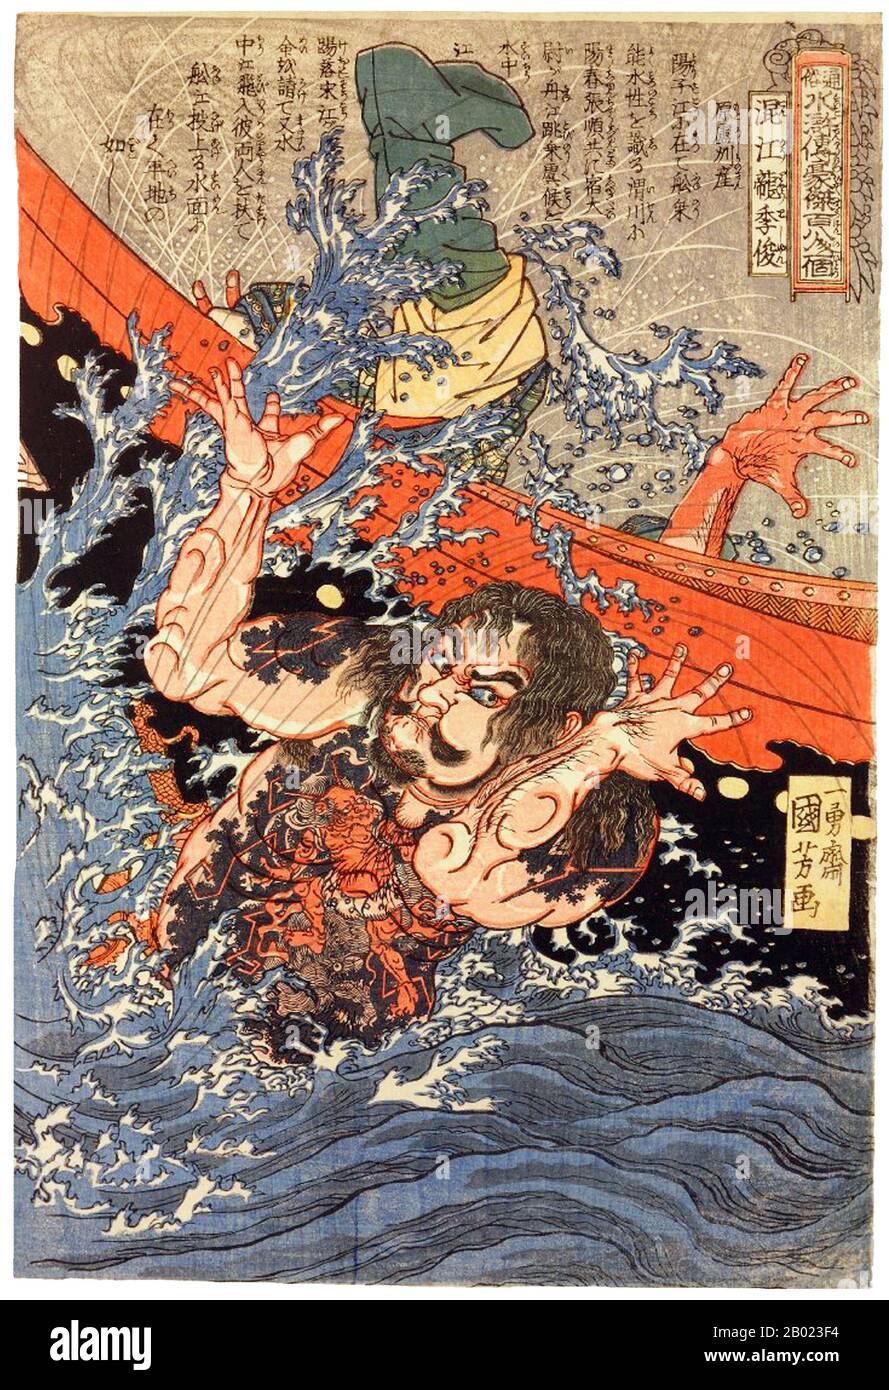 Cina / Giappone: Li Jun (Konkoryu Rishun), uno dei 'cento e otto eroi del margine d'acqua'. Utagawa Kuniyoshi (1797-1863), 1827-1830. Margine d'acqua (conosciuto in cinese come Shuihu Zhuan, talvolta abbreviato in Shuihu), conosciuto anche come Suikoden in giapponese, così come gli fuorilegge della Marsh, la balla delle Marais, tutti gli uomini sono fratelli, uomini delle Marais, O le paludi del Monte Liang, è un romanzo del XIV secolo e uno dei quattro grandi romanzi classici della letteratura cinese. Attribuito a Shi Nai'an e scritto in cinese vernacolare. Foto Stock